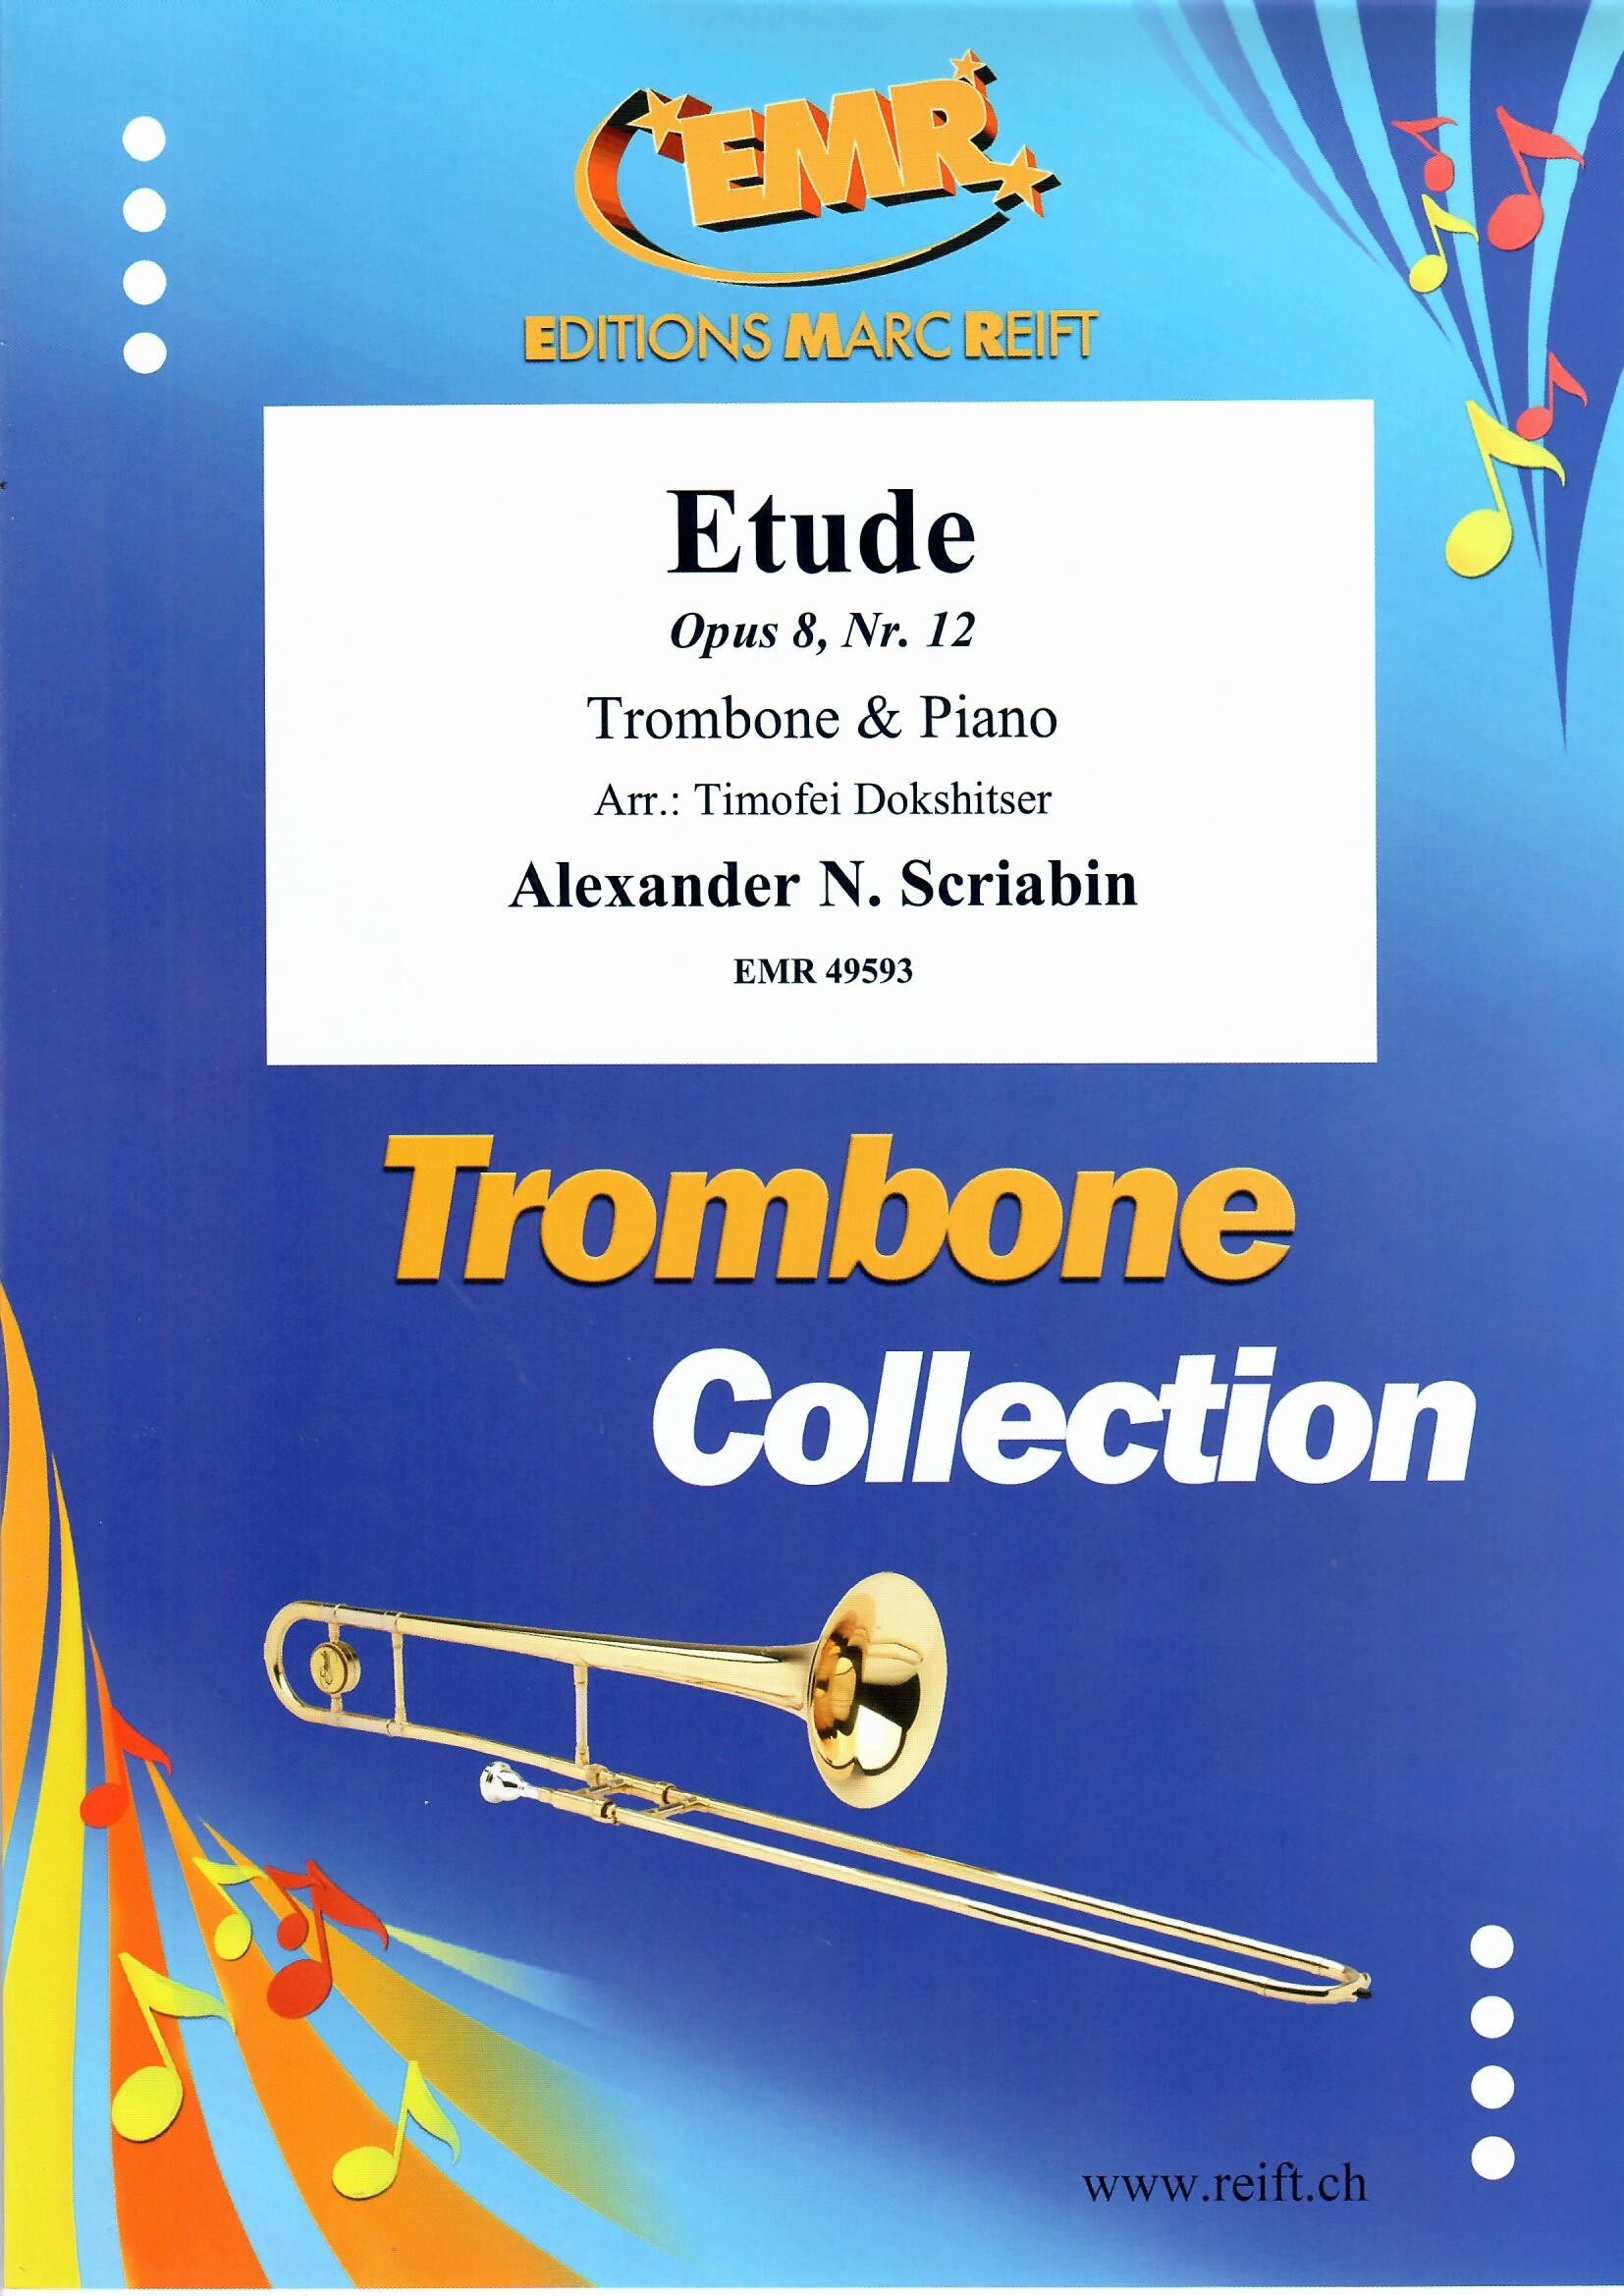 ETUDE - Trombone & Piano